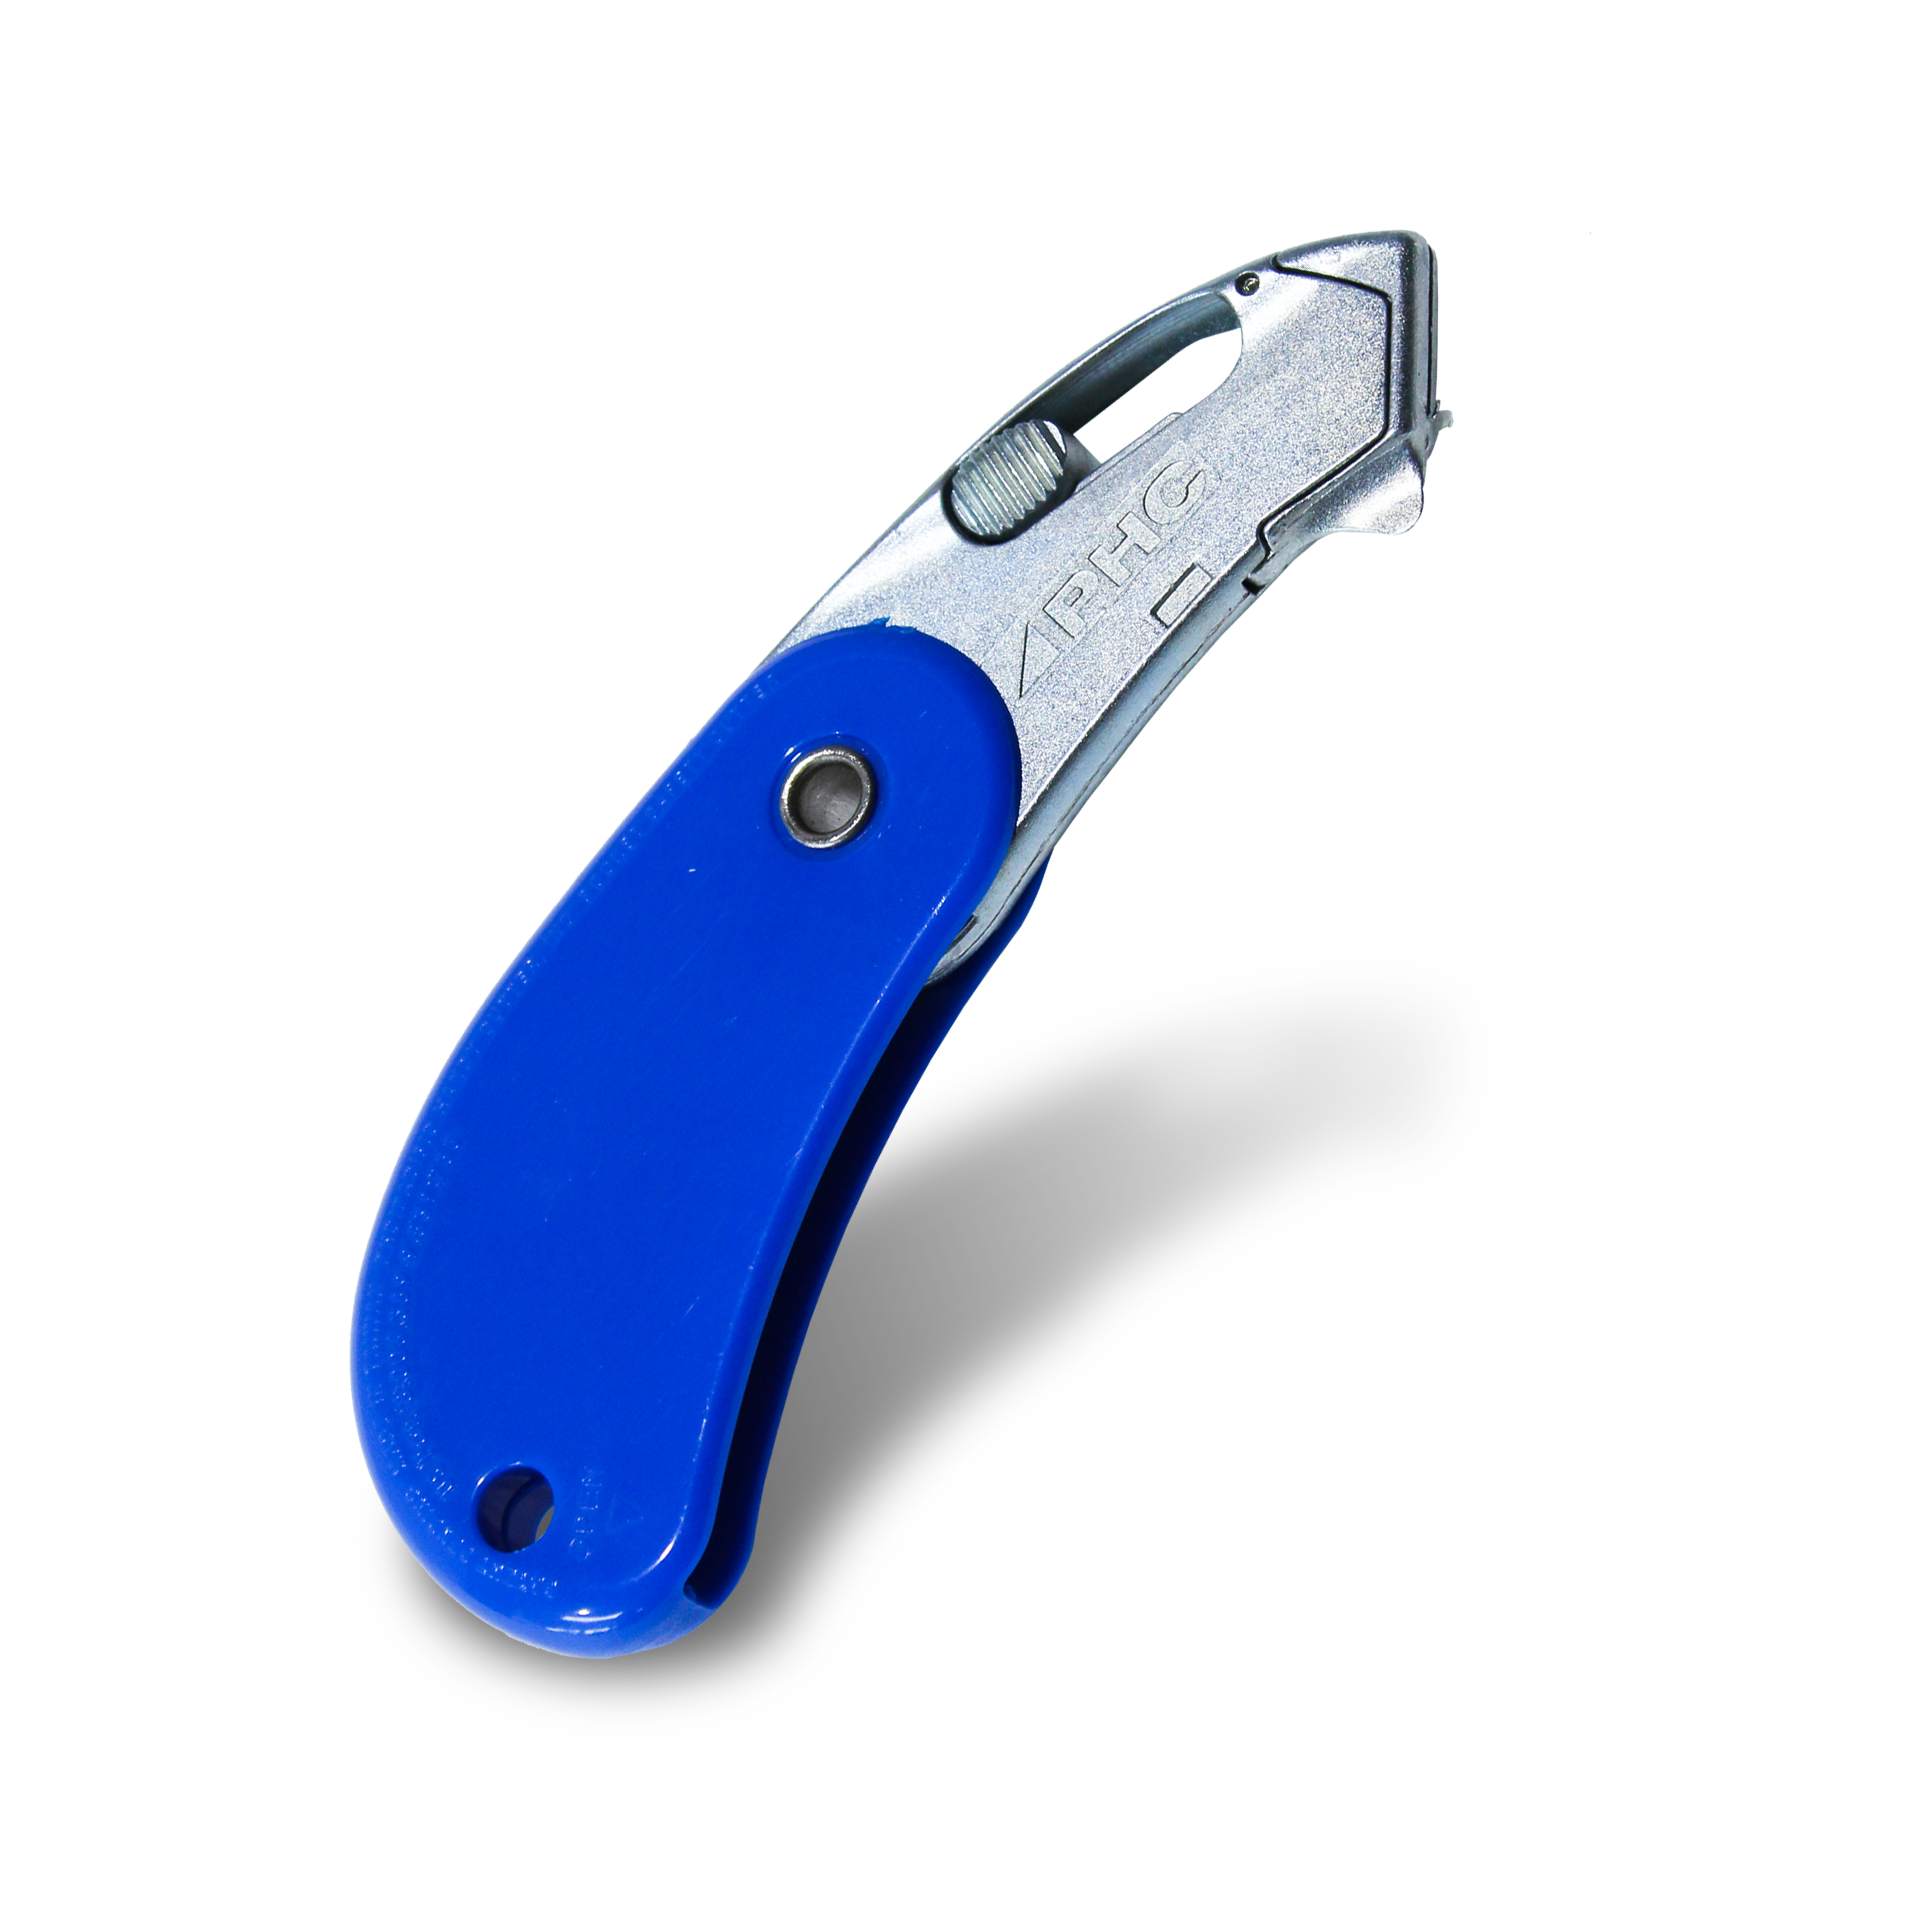 คัตเตอร์นิรภัยอเนกประสงค์แบบพกพา PSC2 Pocket Safety Cutter สีน้ำเงิน